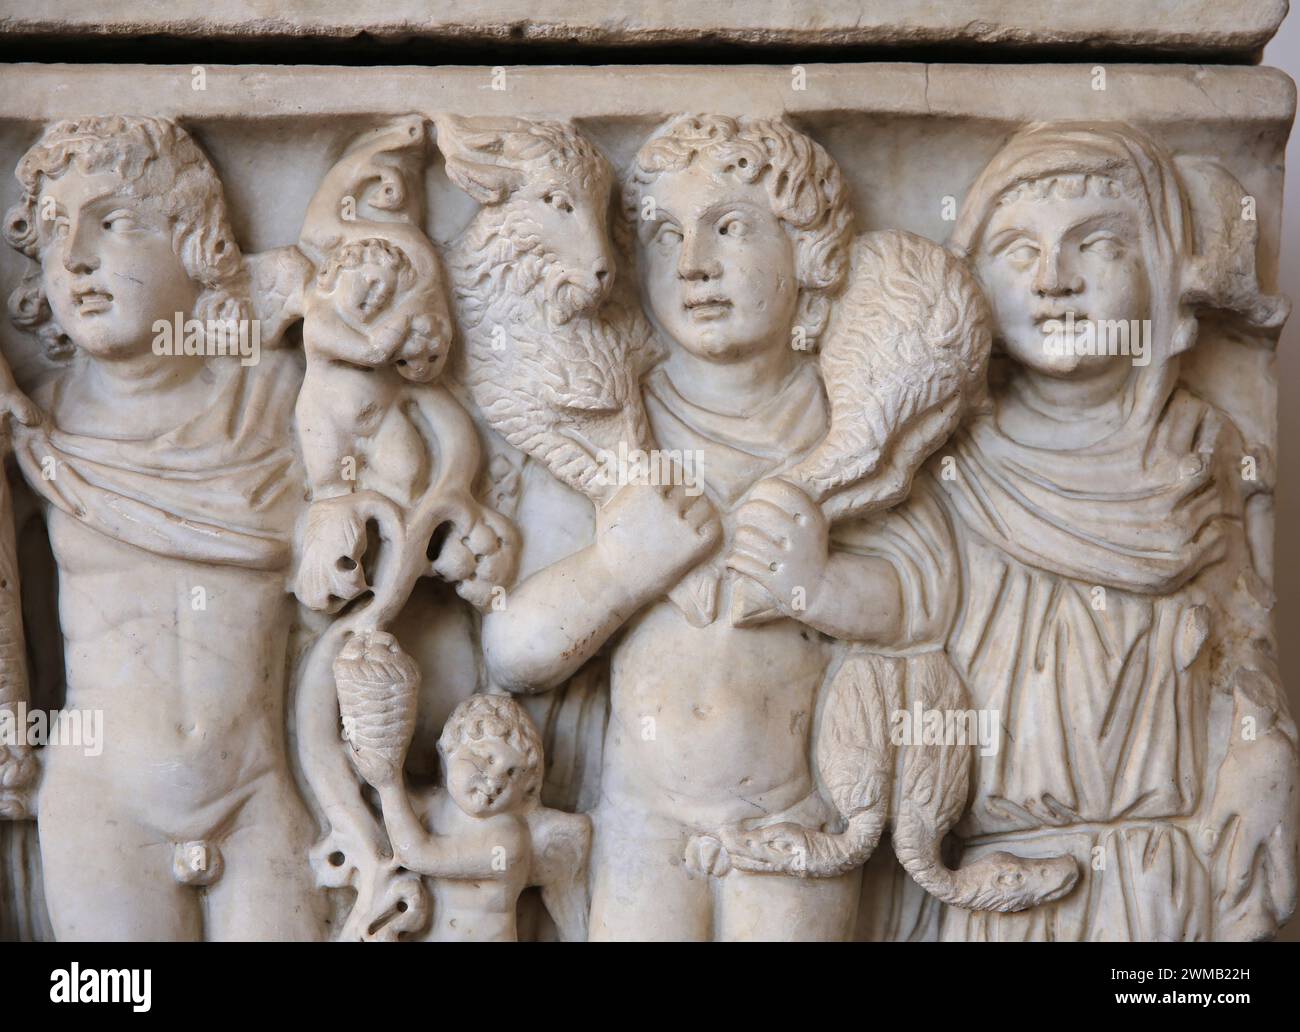 Sarkophag. Der betrunkene Dionysos wird von einem Satyr und den Jahreszeiten aufgehalten. Marmor. 4. Jahrhundert n. Chr. Angaben zu Landwirten. Unbekannte Herkunft. Nationales Römisches Museum Stockfoto